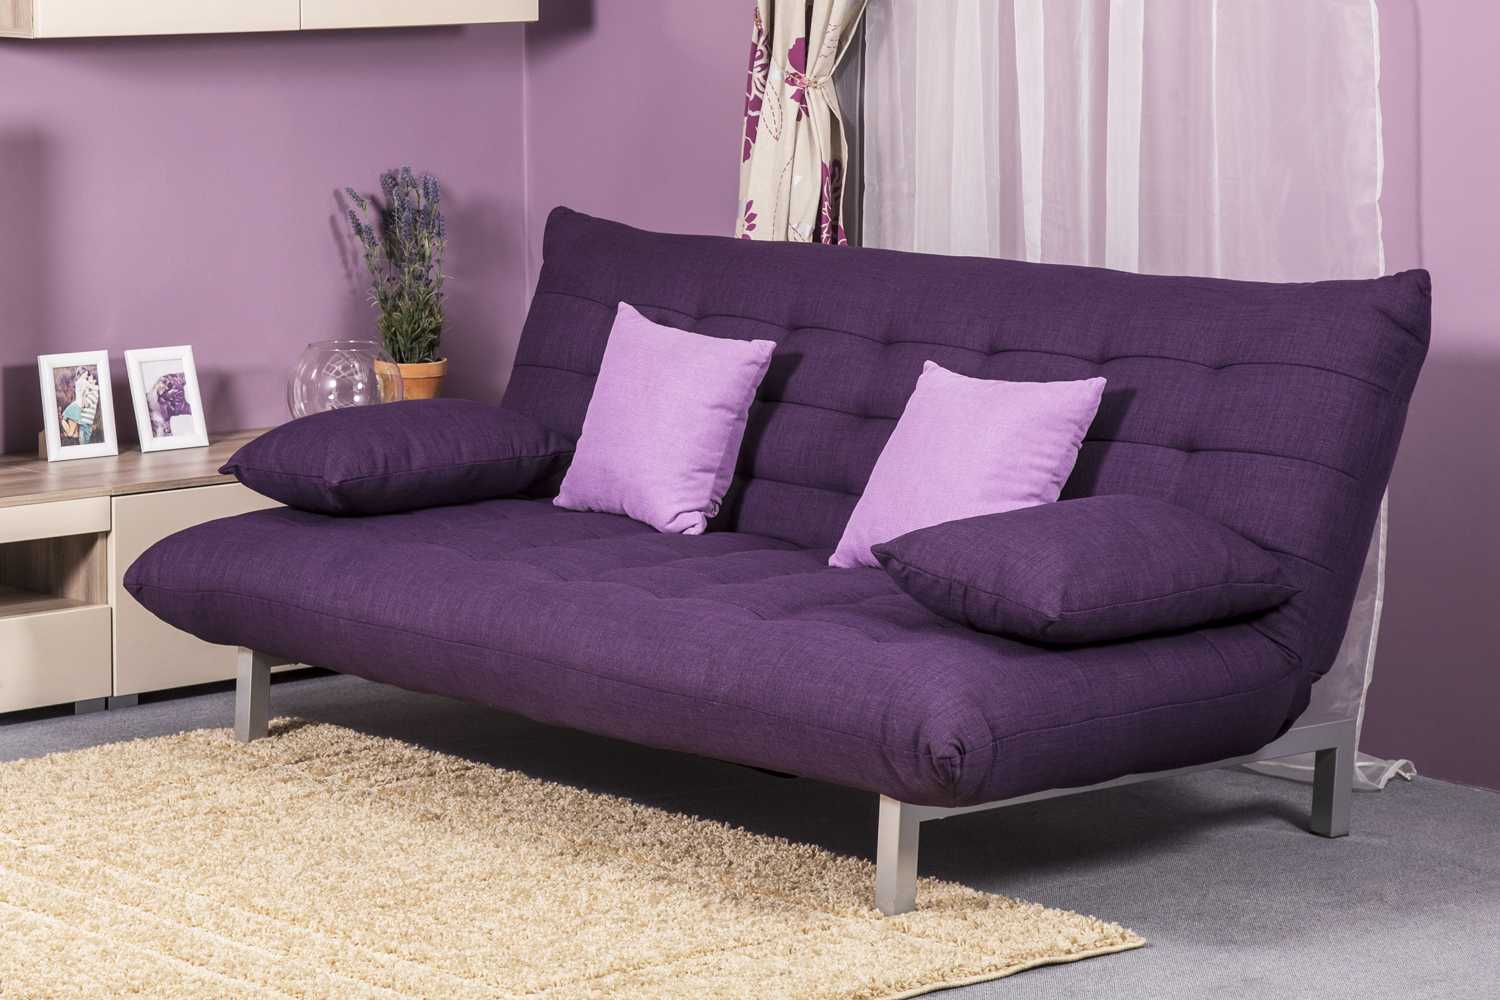 Интерьер комнат с фиолетовым диваном